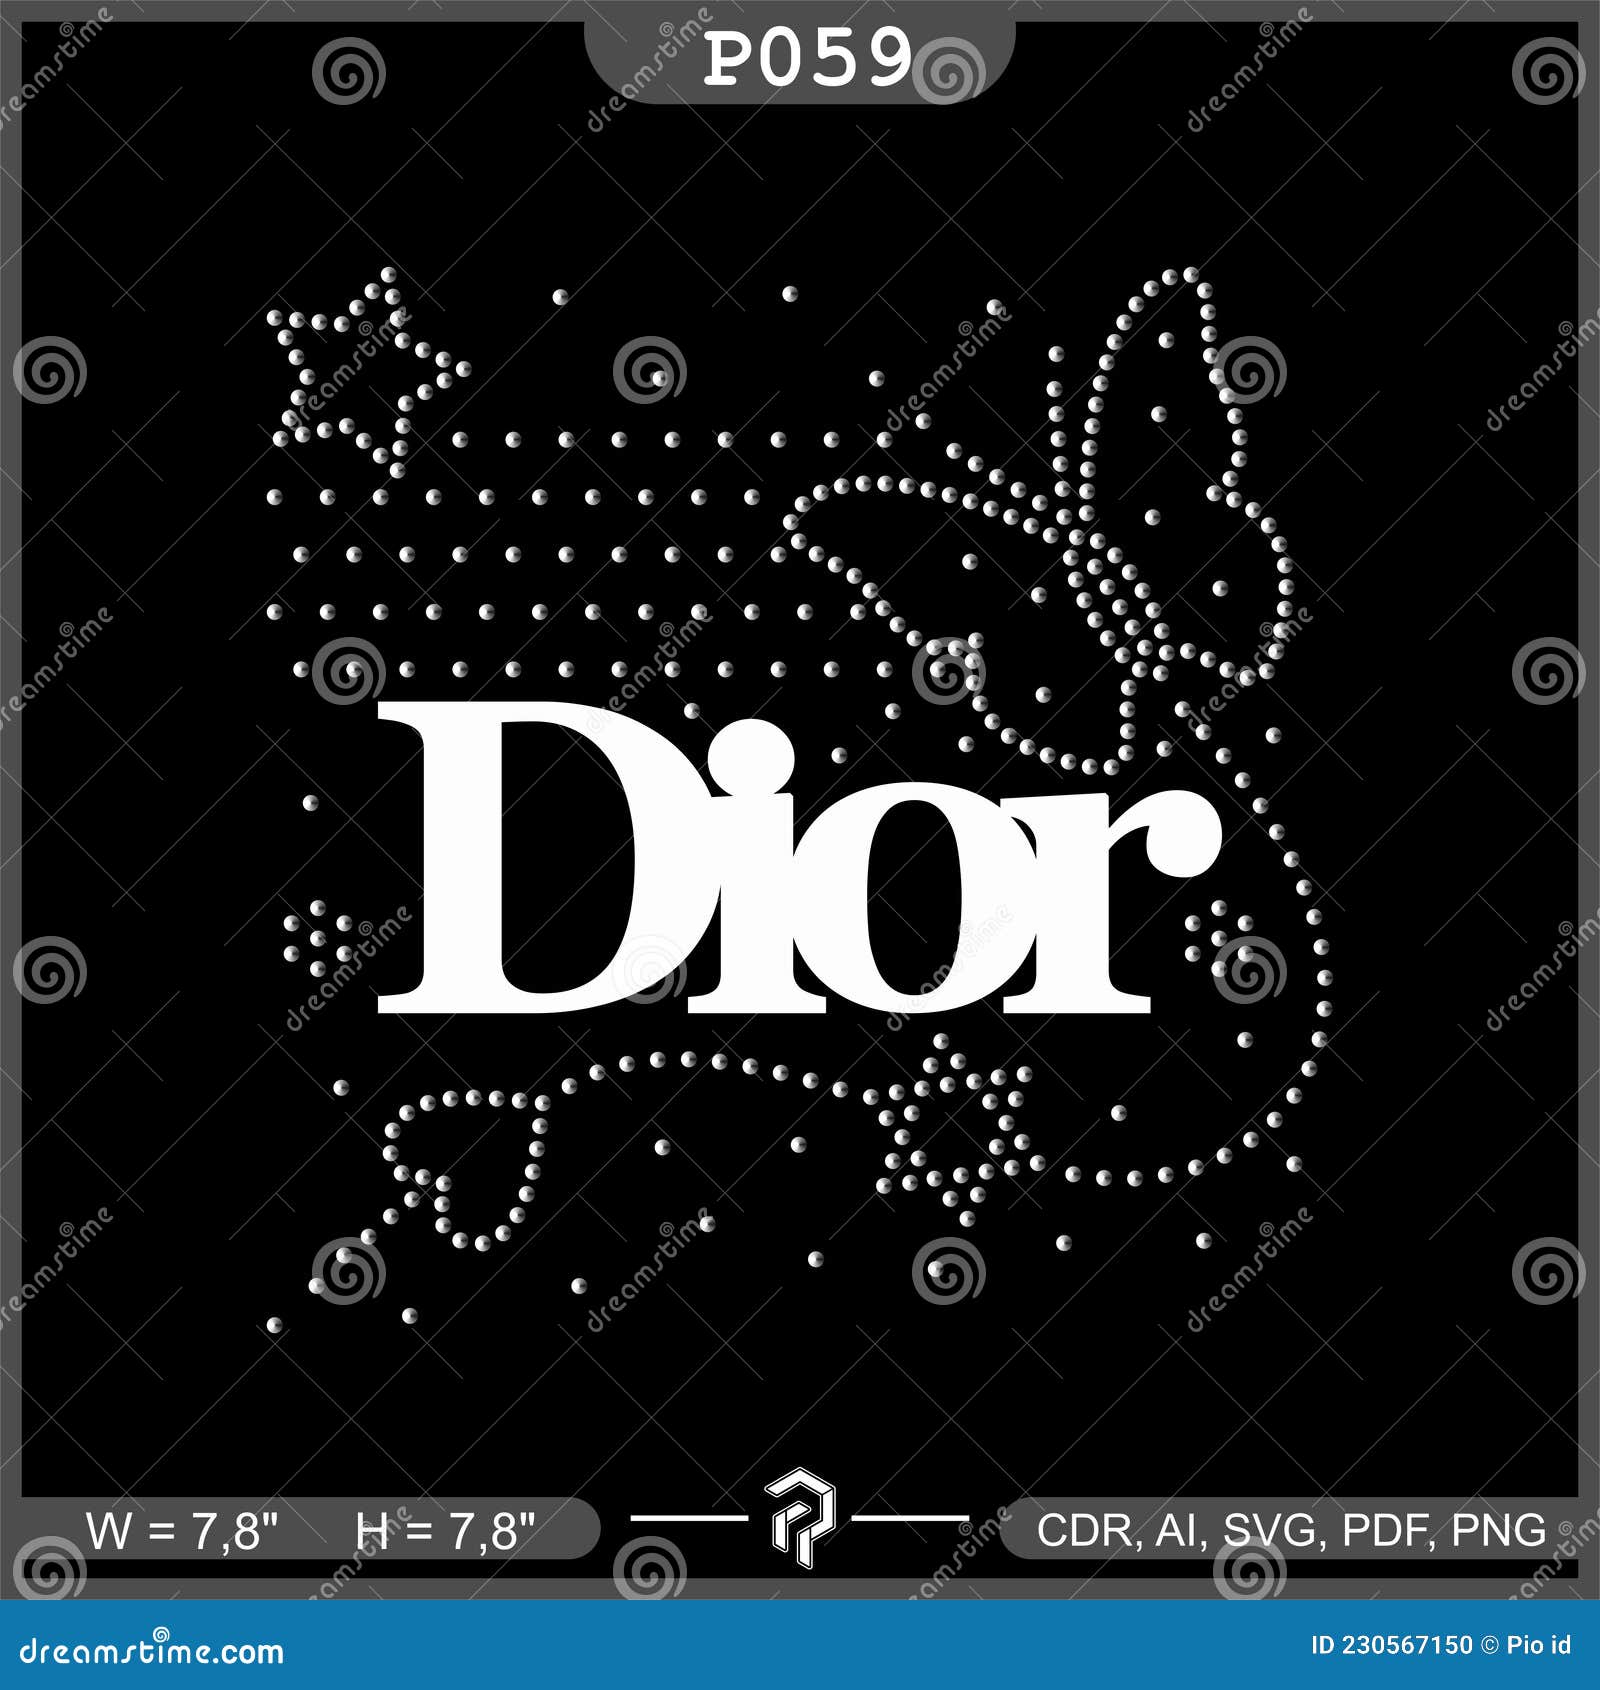 Dior Seamless Patterns, Vol. 1: Monogram by itsfarahbakhsh on DeviantArt